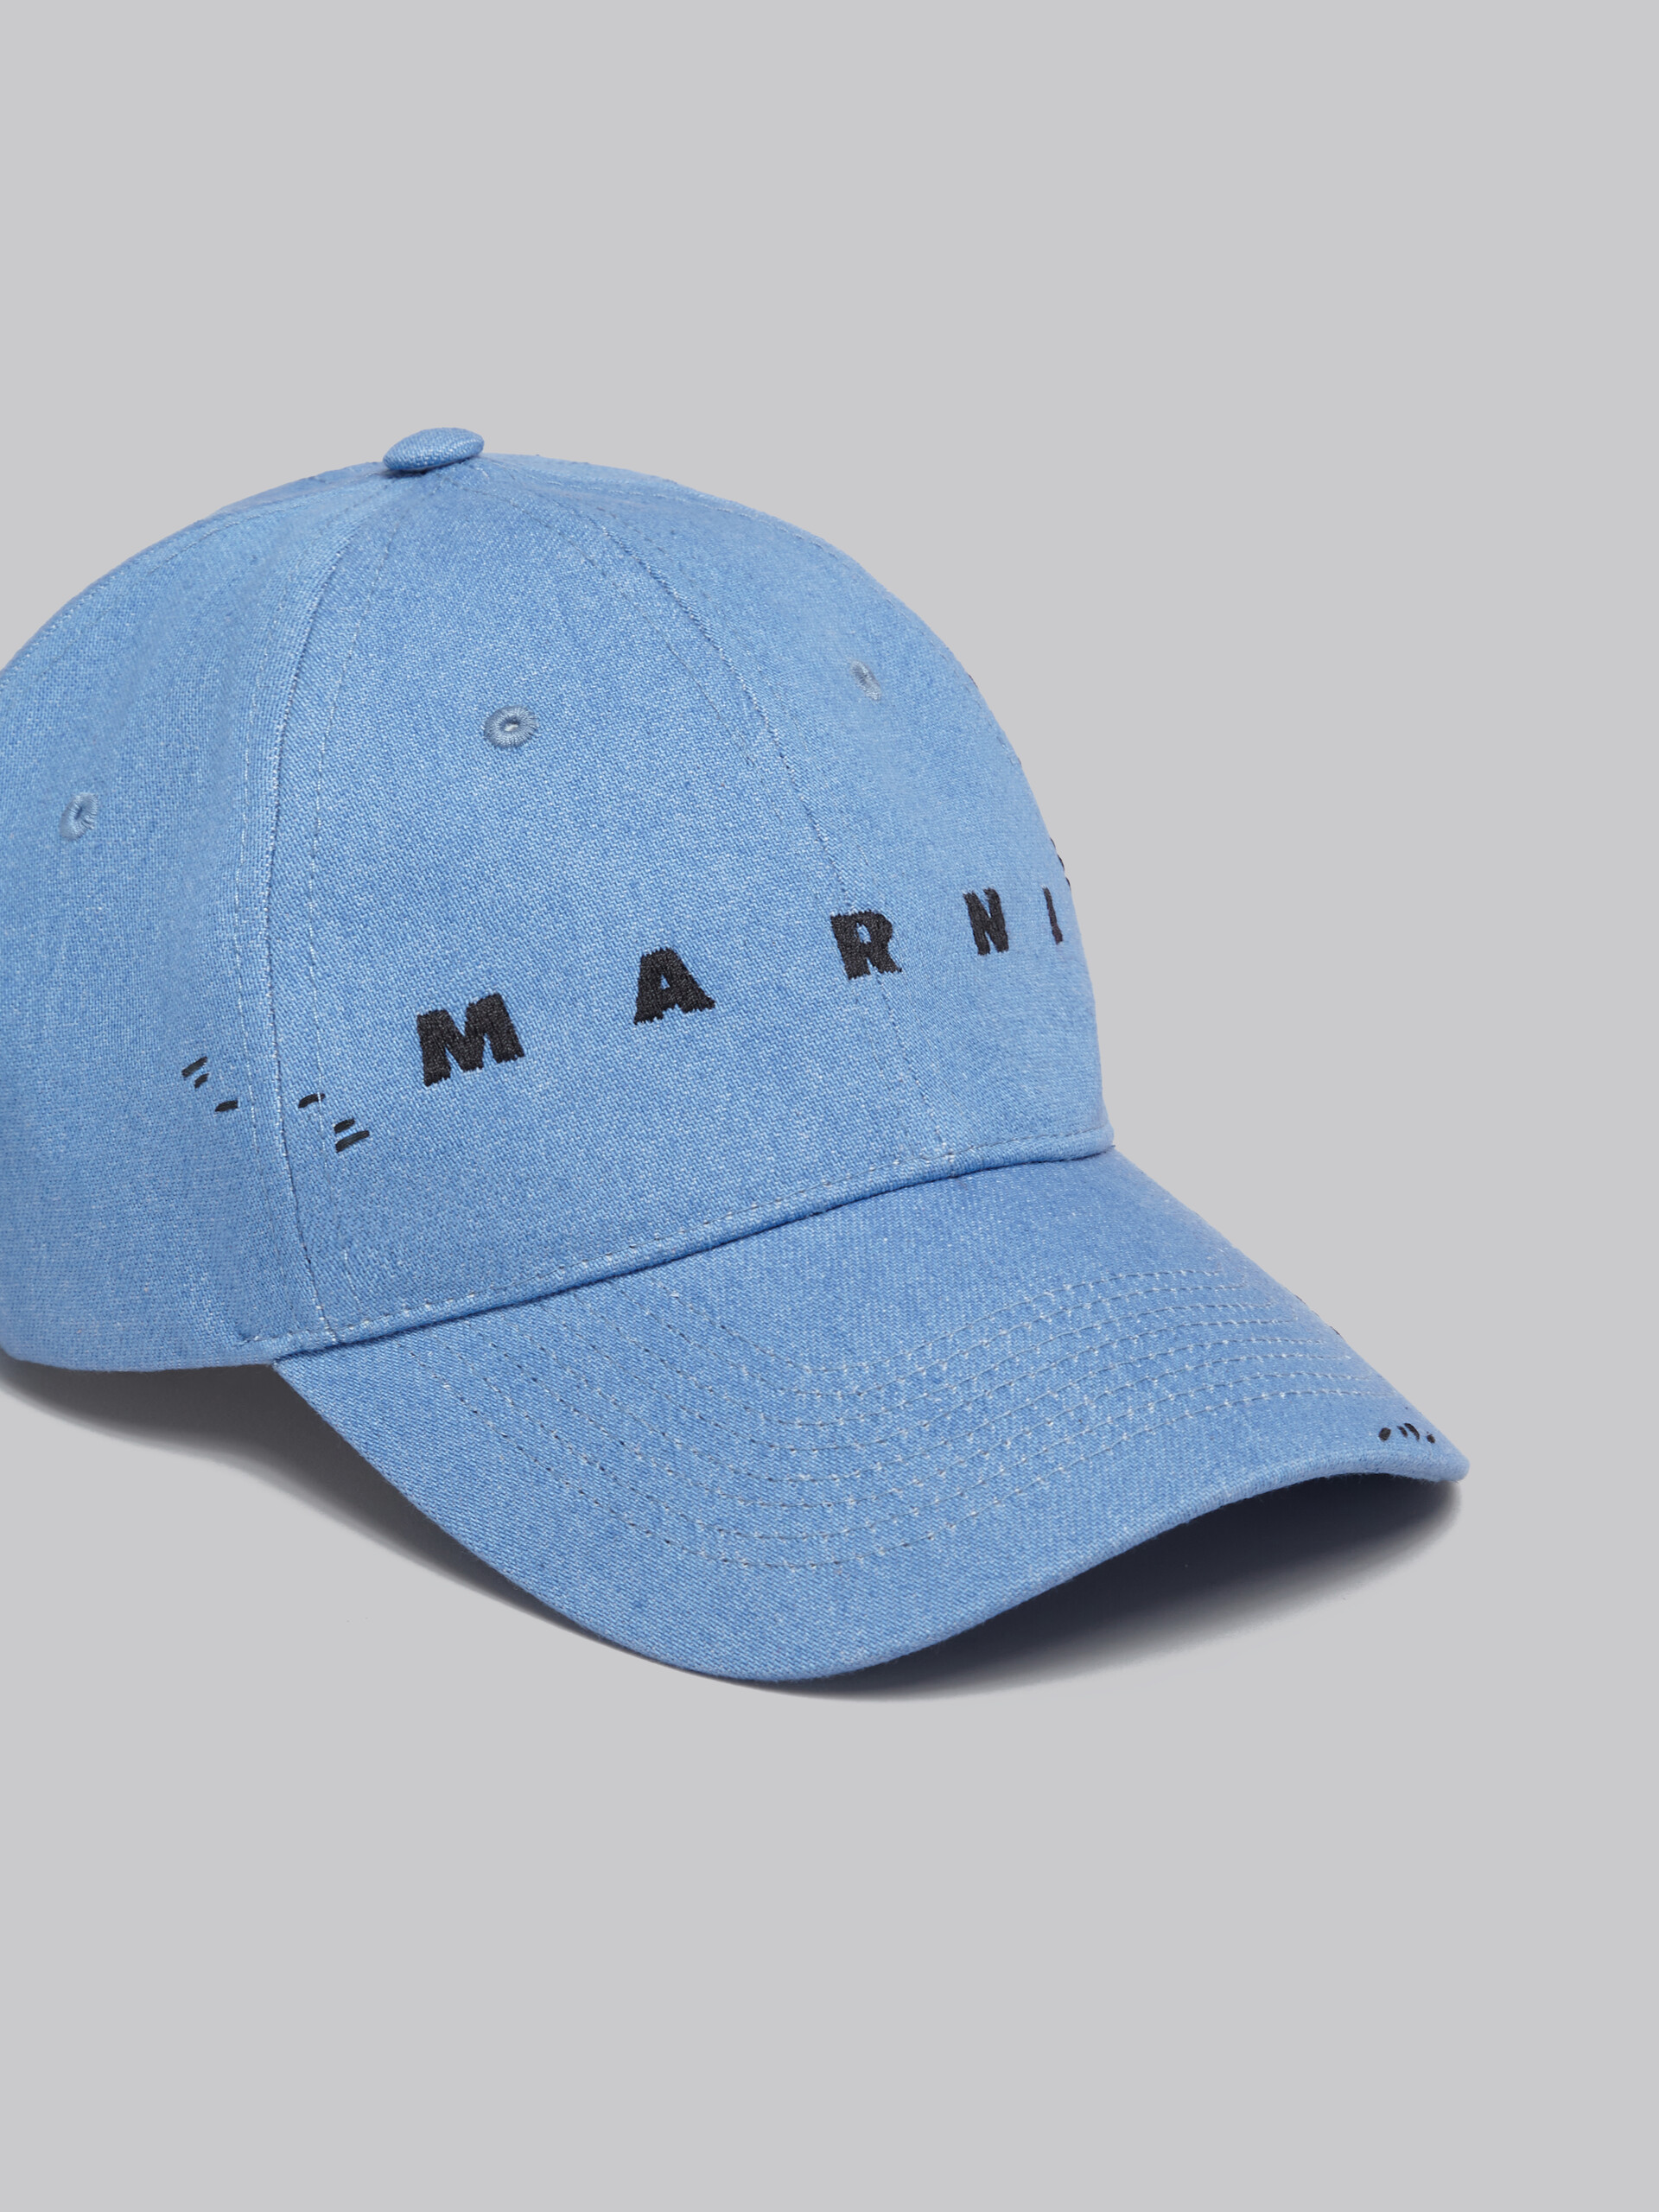 Blaue Kappe aus Denim mit Marni-Flicken - Hüte - Image 4